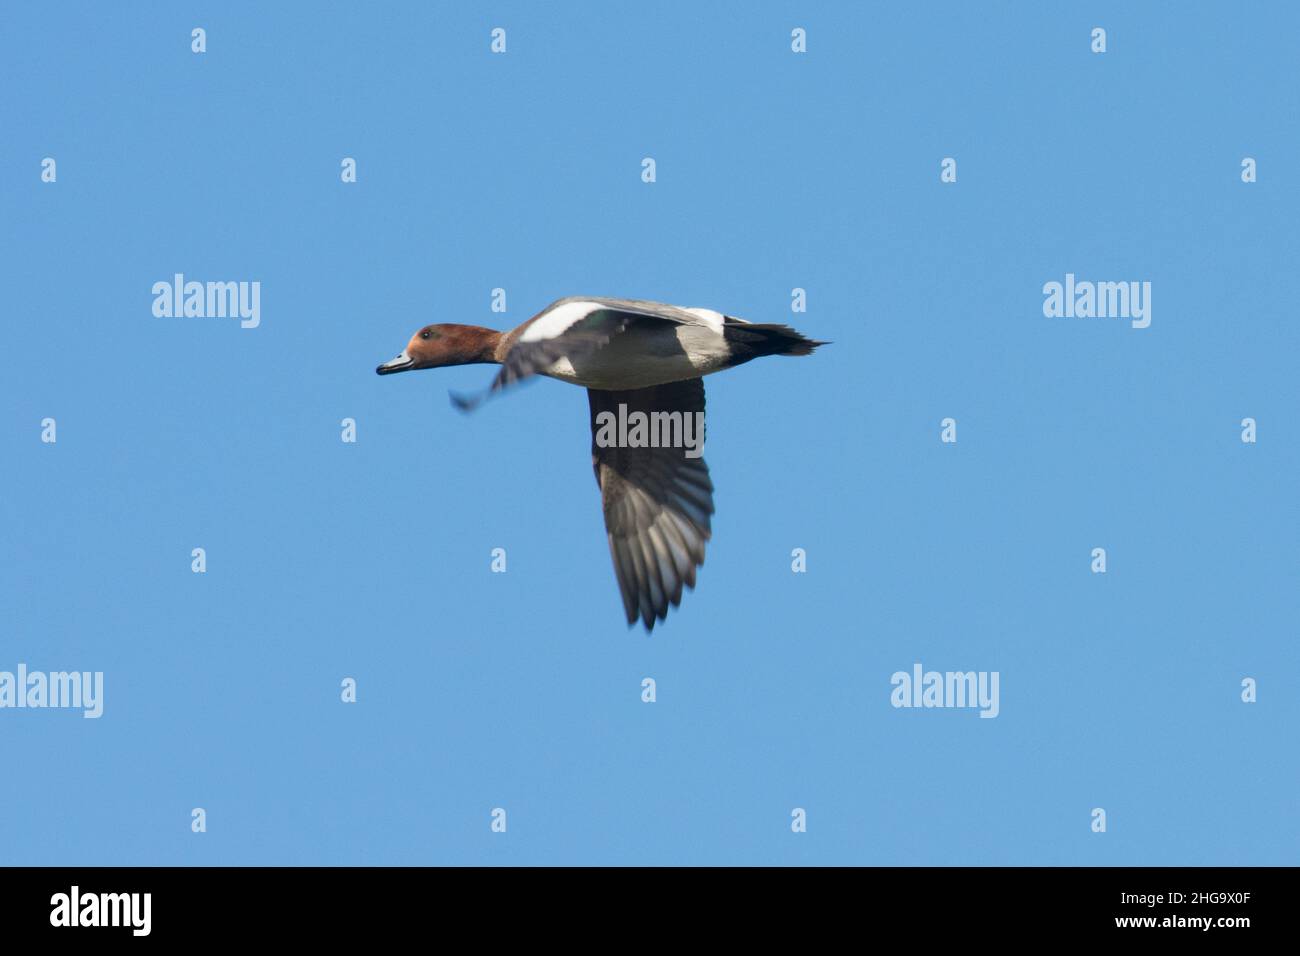 Wigeon, Anas penelope, canard mâle volant dans un ciel bleu, plumage d'hiver, Royaume-Uni Banque D'Images